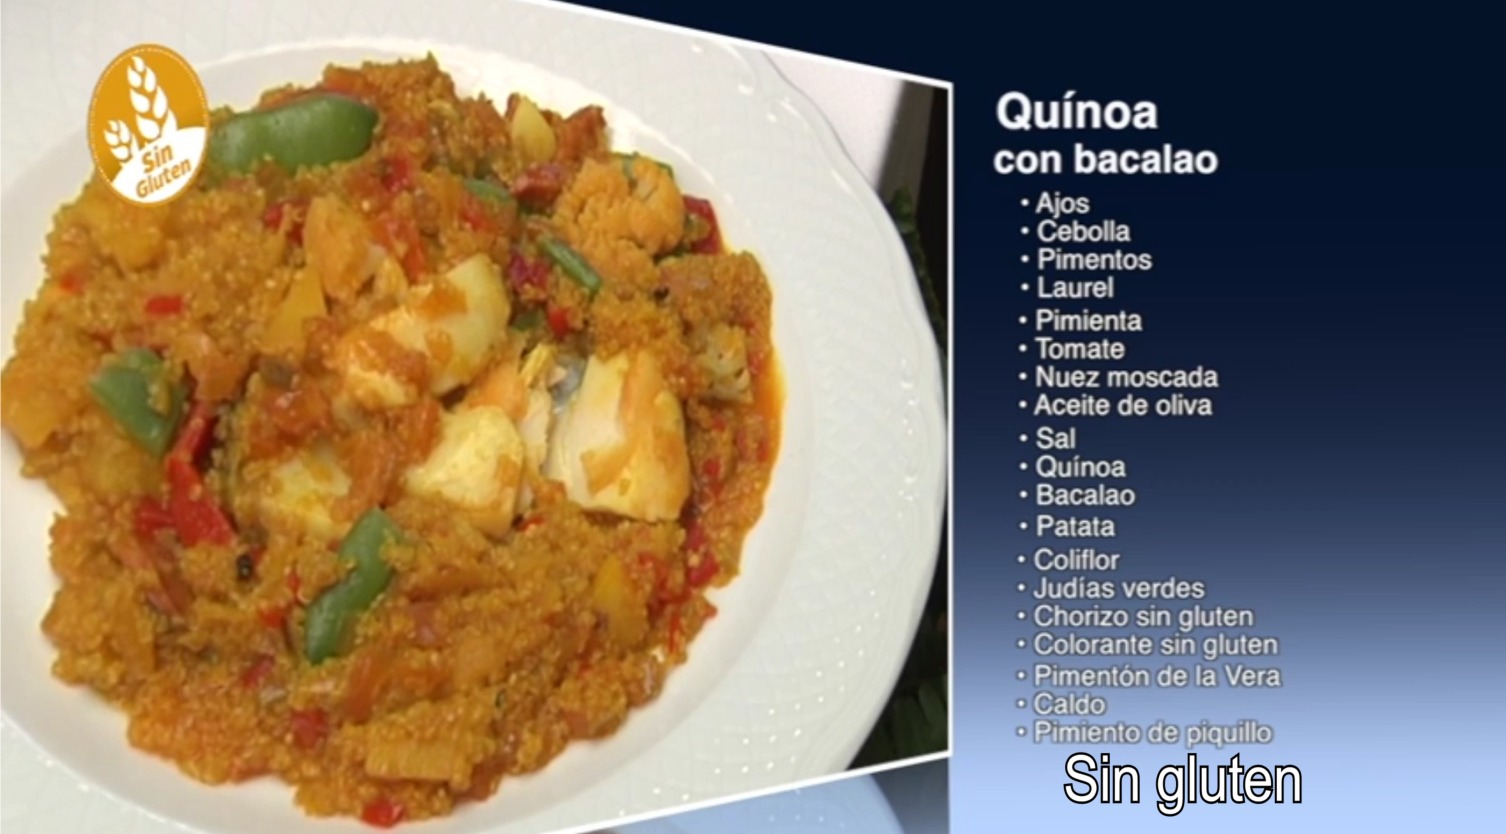 quinoa-con-bacalao-sin-gluten-del-restaurante-sociedad-plateros-maria-auxiliadora